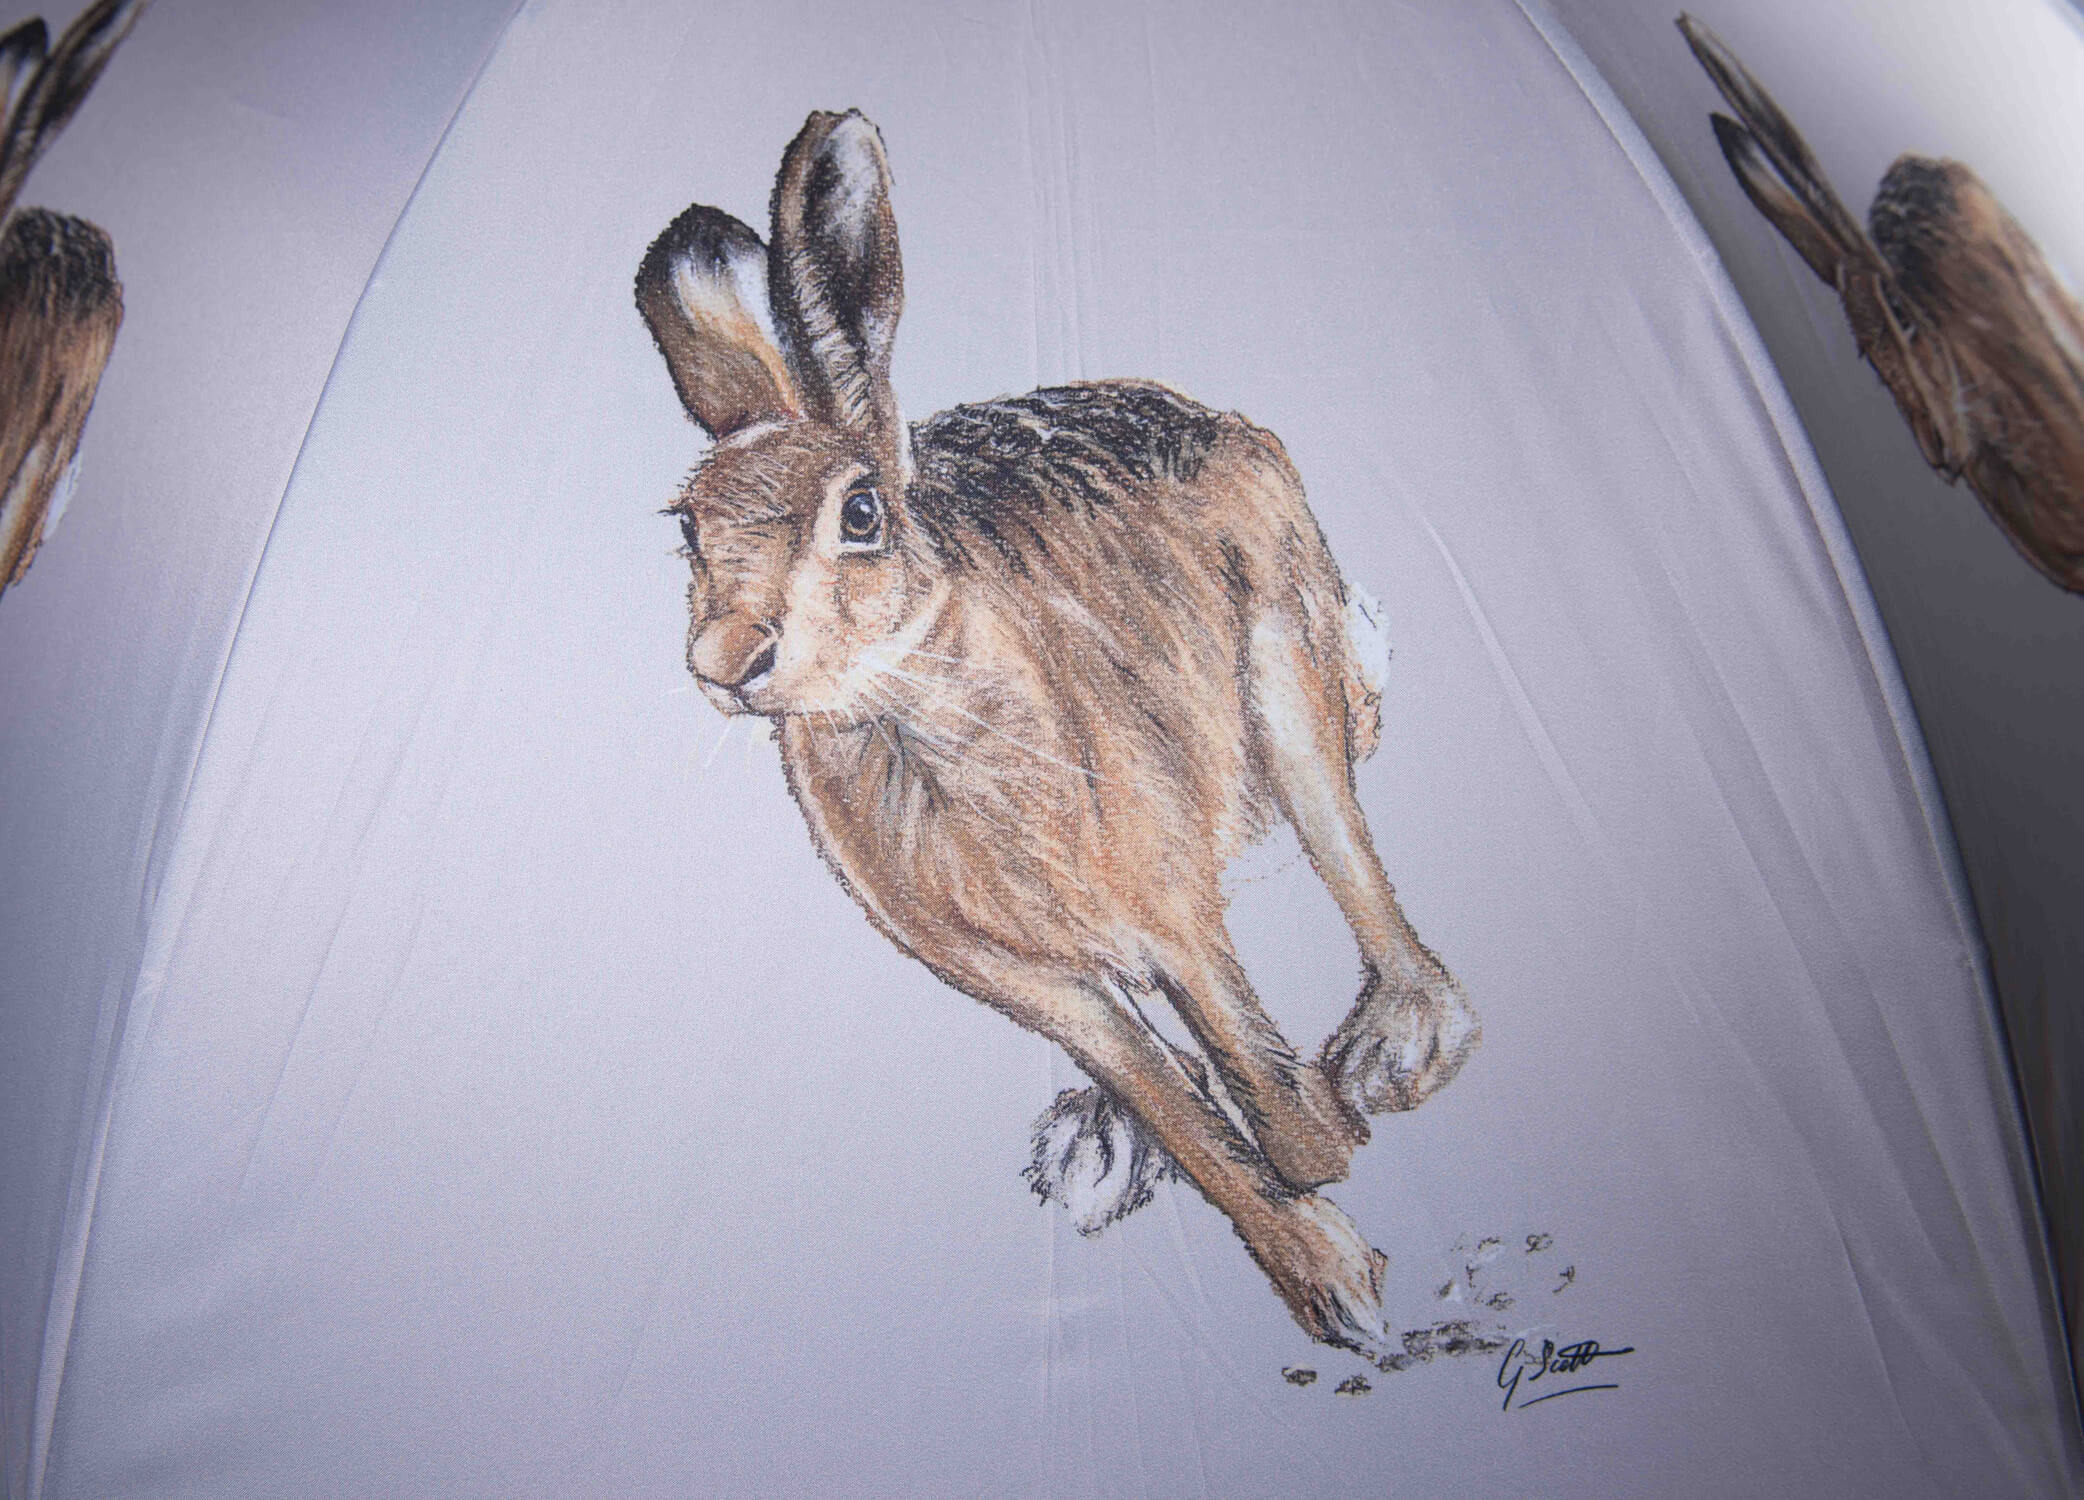 Hare running photo